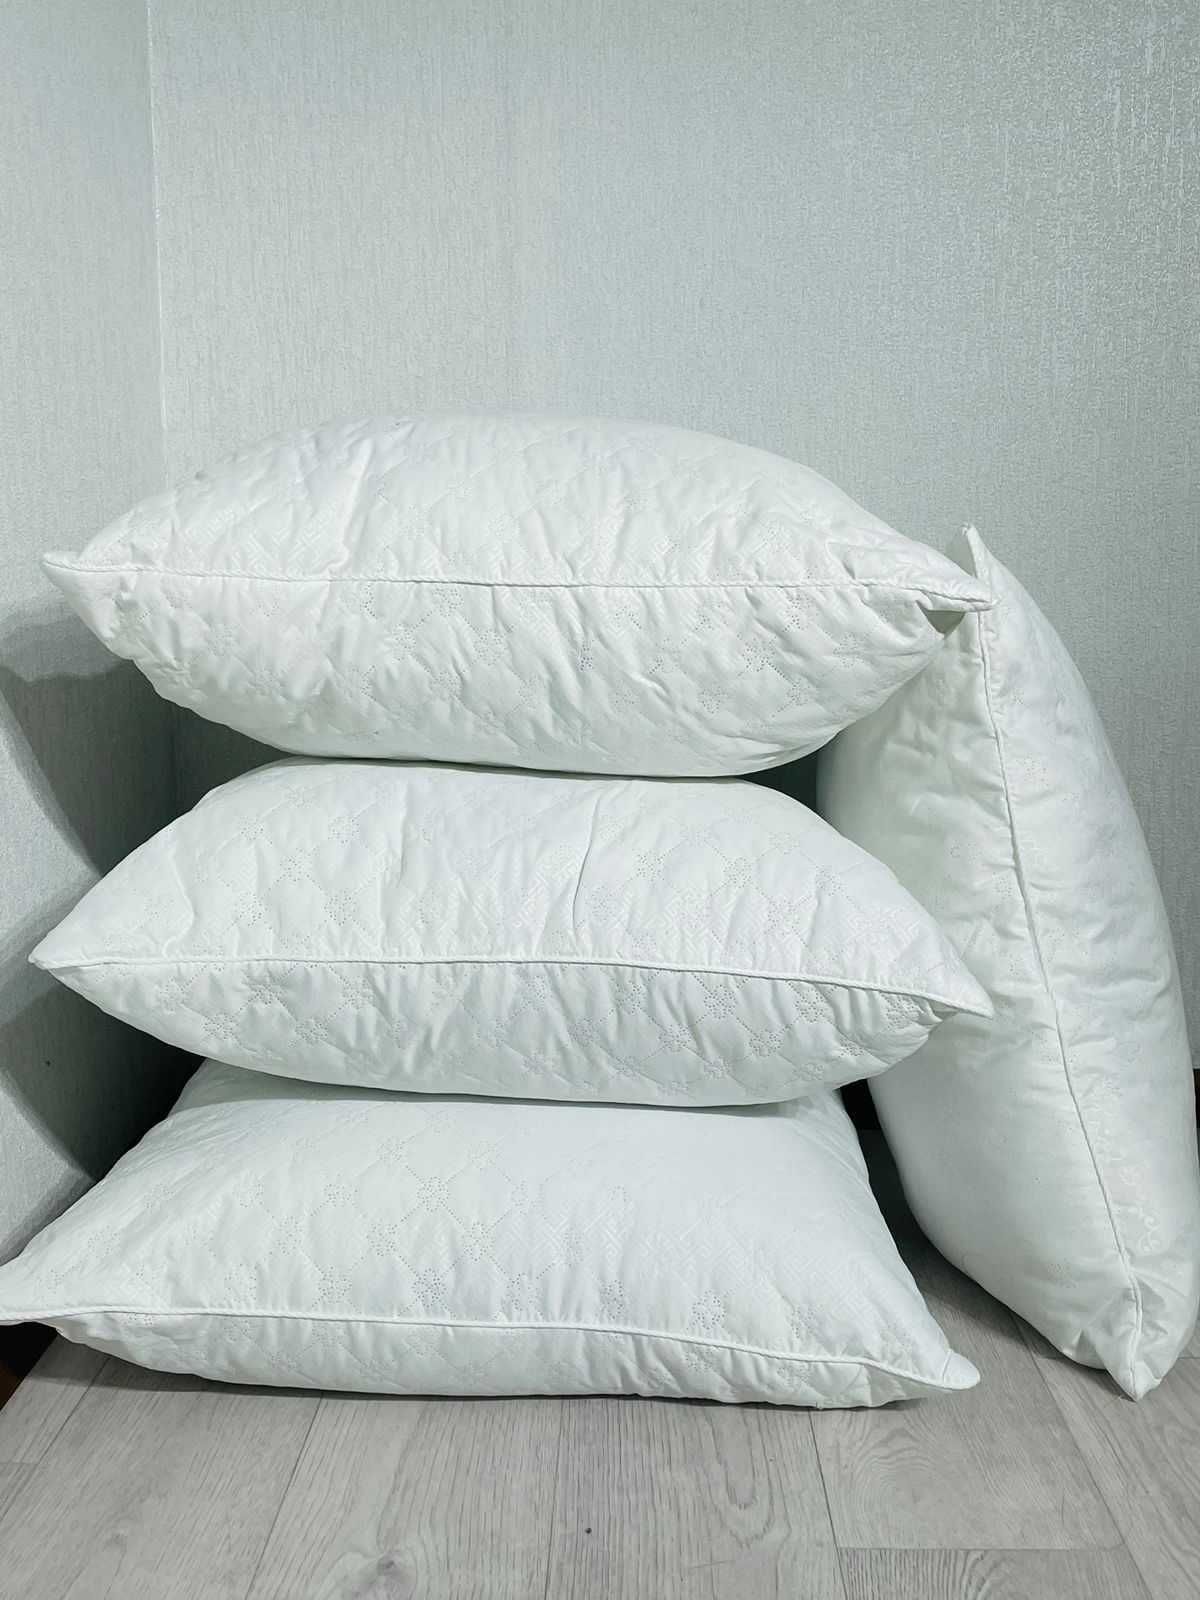 Мягкие подушки, оптом по доступной цене